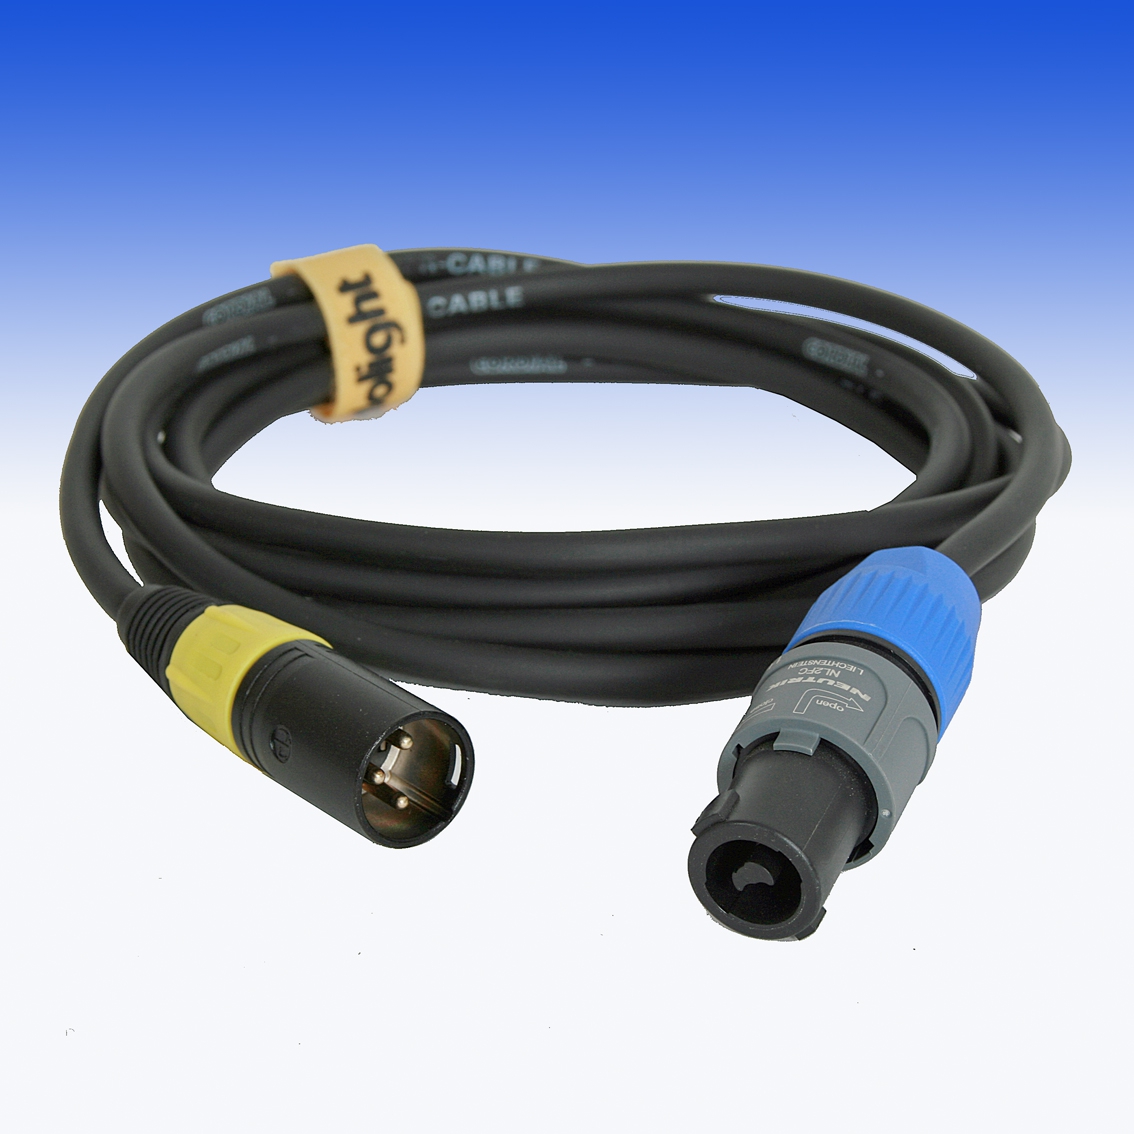 DPOW3XLR-SPEAK Kabel mit 3XLR und Neutrik SpeakON Anschlüssen